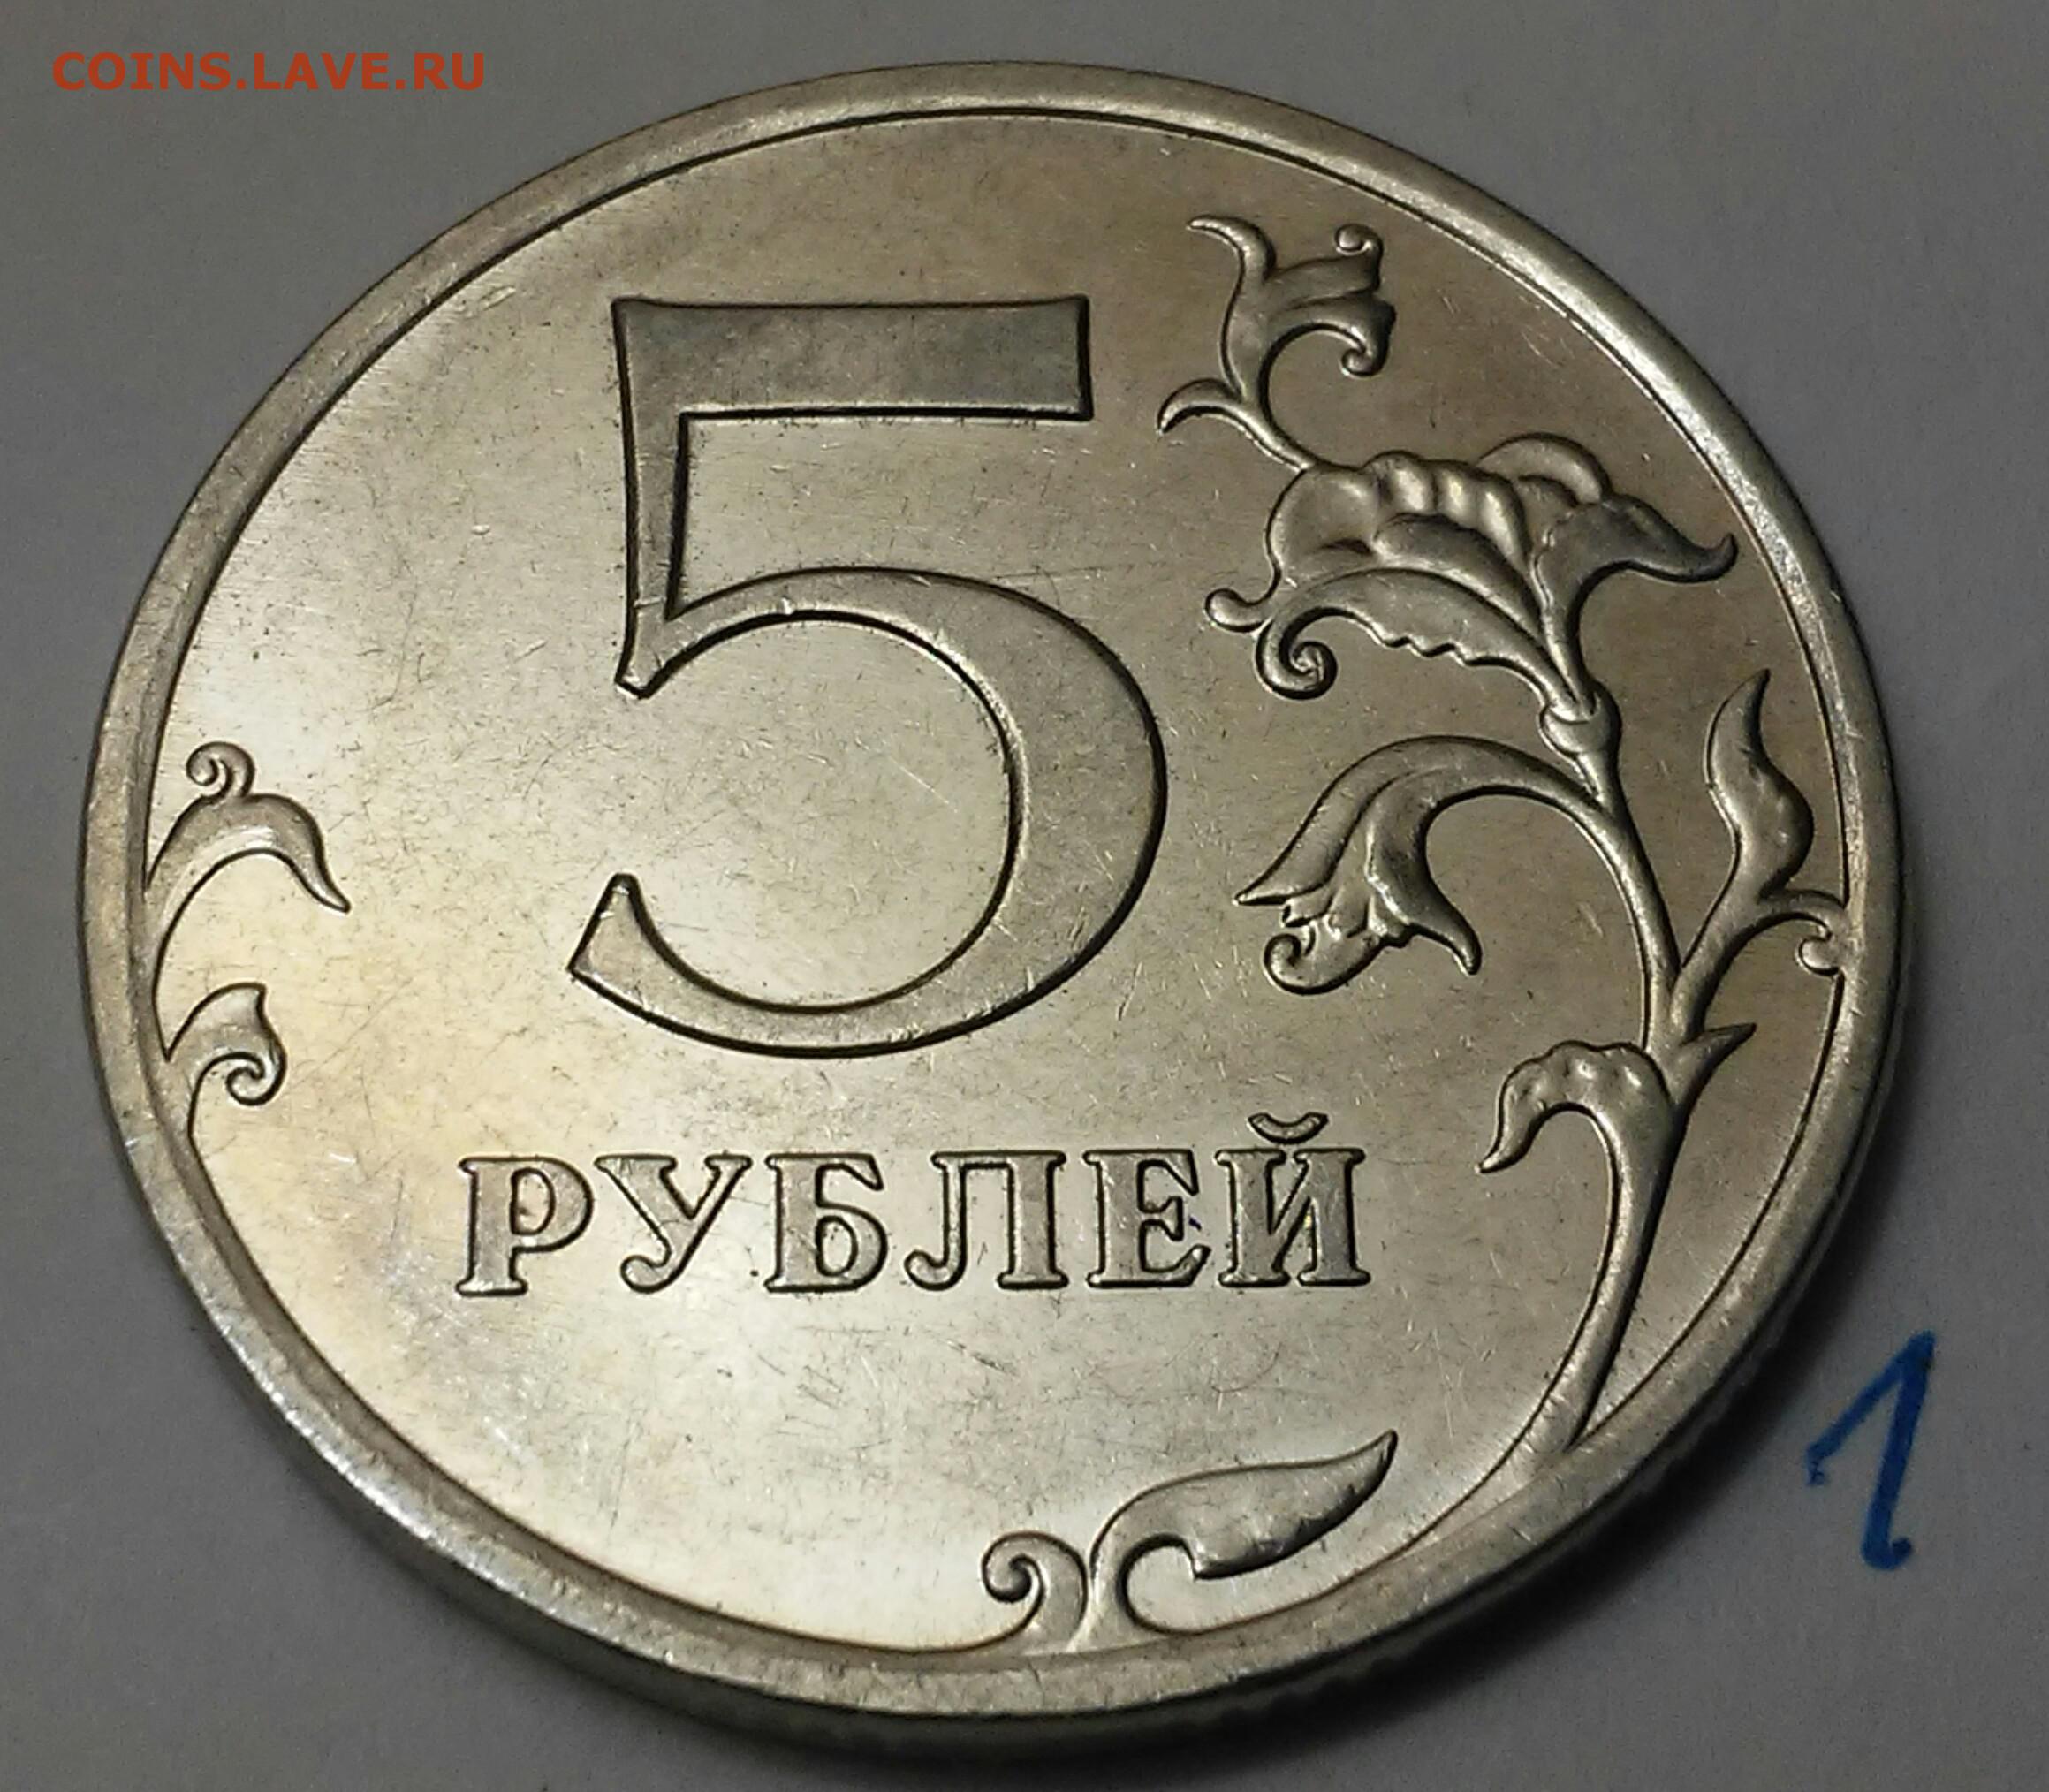 6 в рублях в россии. 5 Рублей 2021. Монета 5 рублей вектор. Ценник 5 рублей. 5 Рублей 10 рублей.